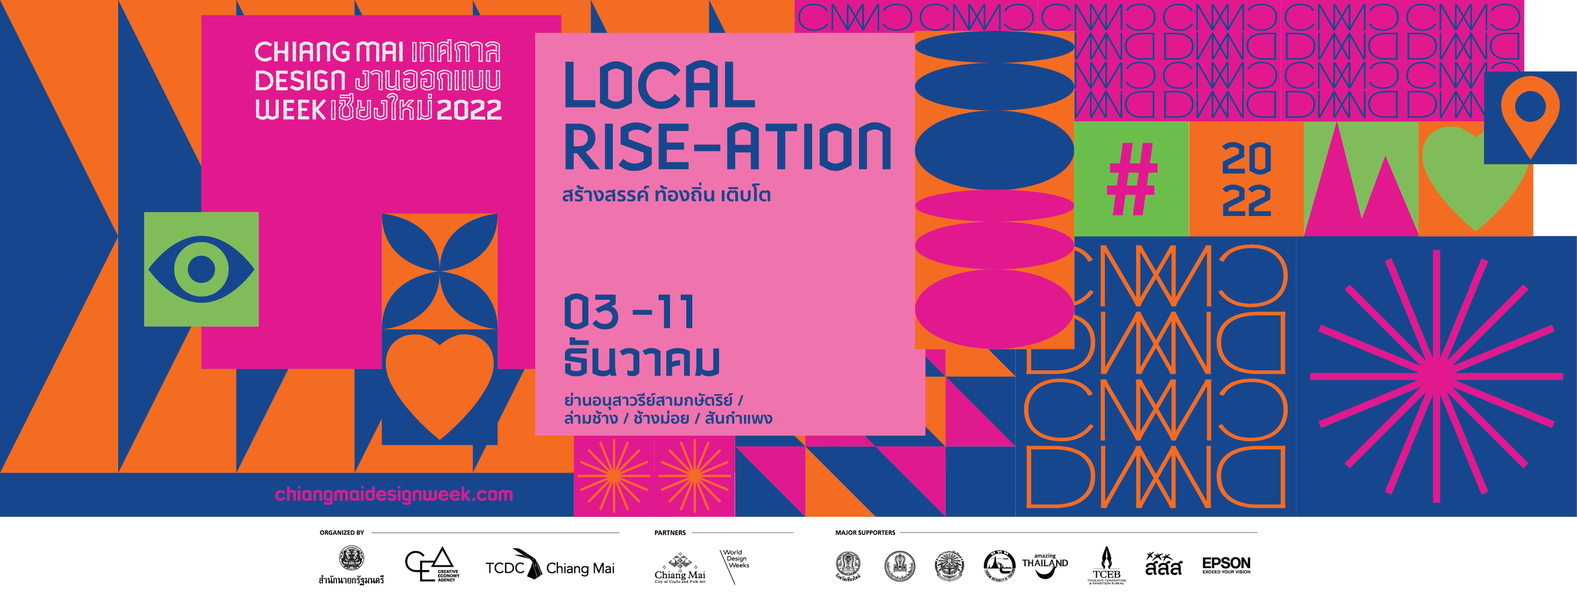 เชิญร่วมงานเทศกาลงานออกแบบเชียงใหม่ ประจำปี 2565 : Chiang Mai Design Week 2022